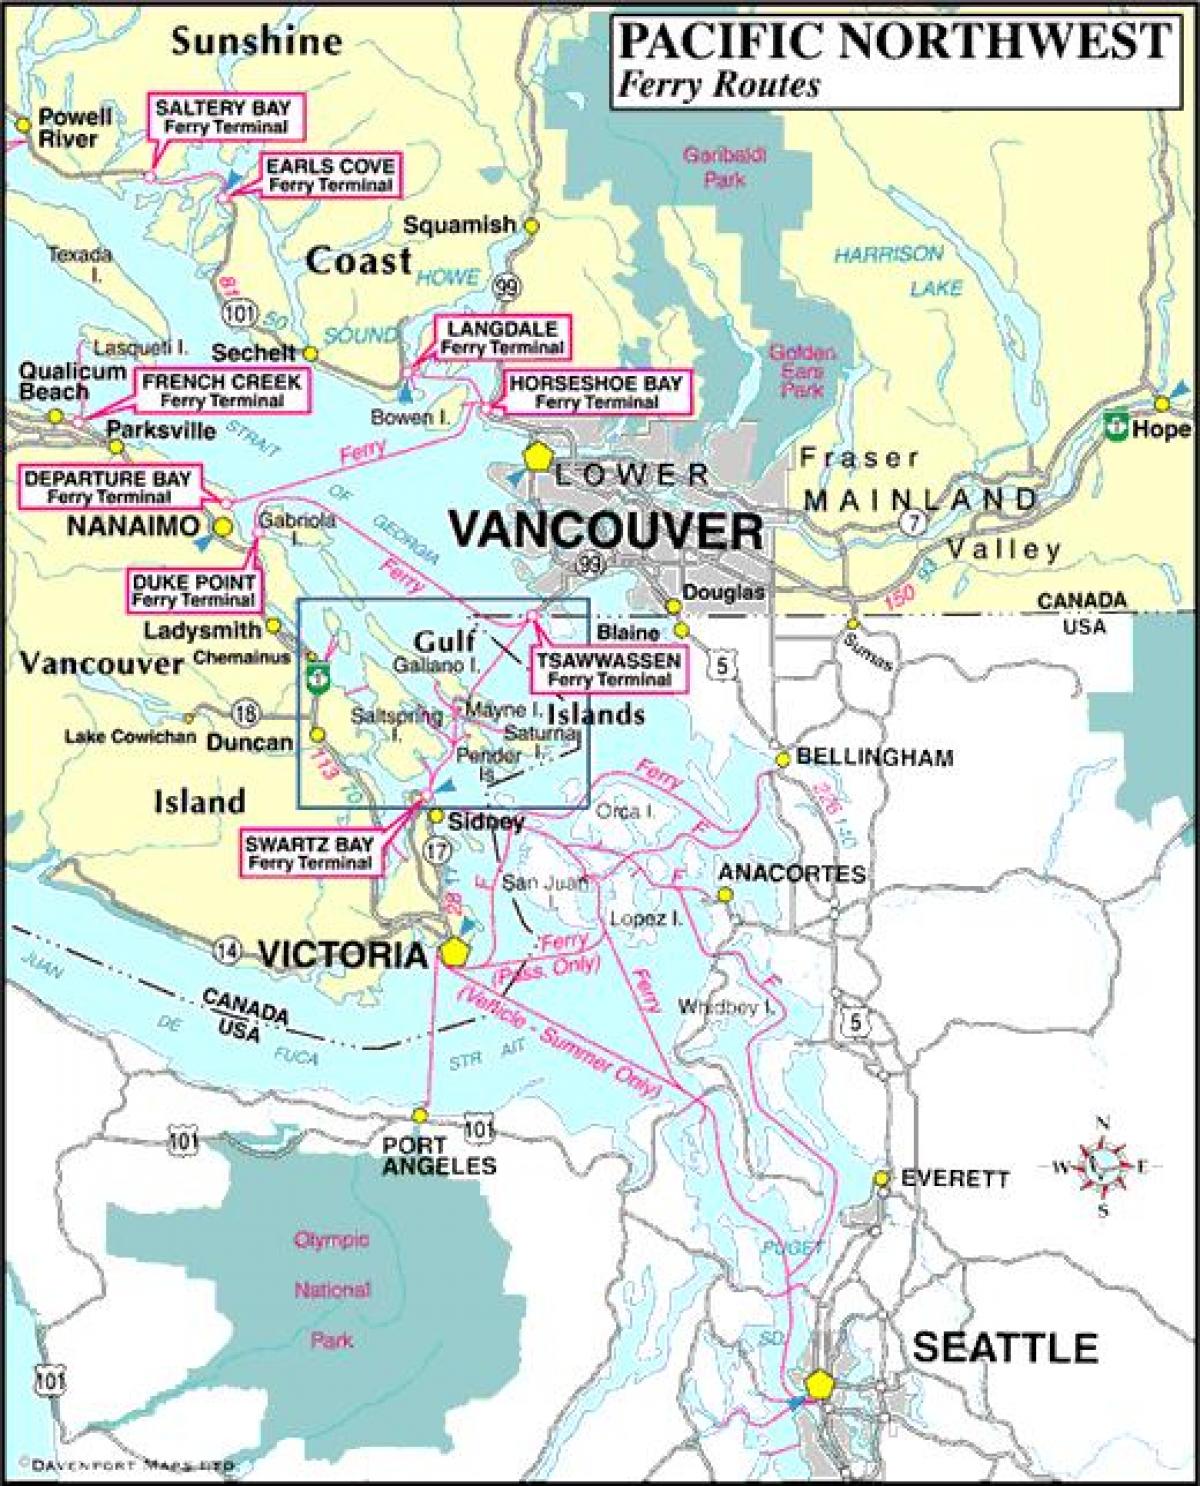 Vancouver կղզի լաստանավային ուղիների քարտեզի վրա